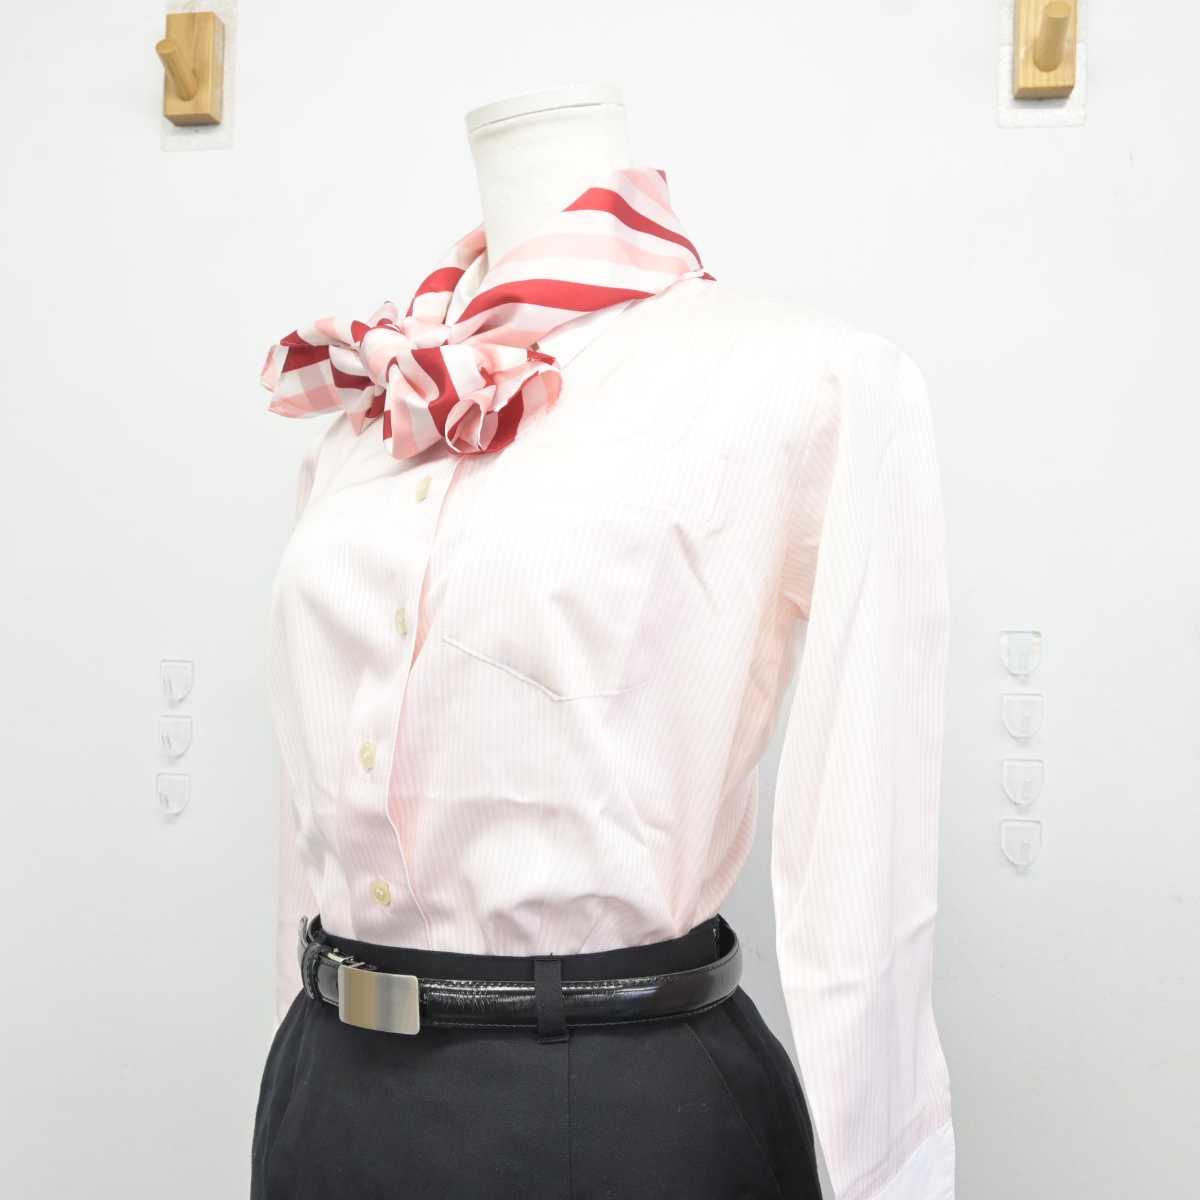 【中古】 JALエクスプレス 女子制服 5点 (ジャケット・シャツ・スカート) sf040475